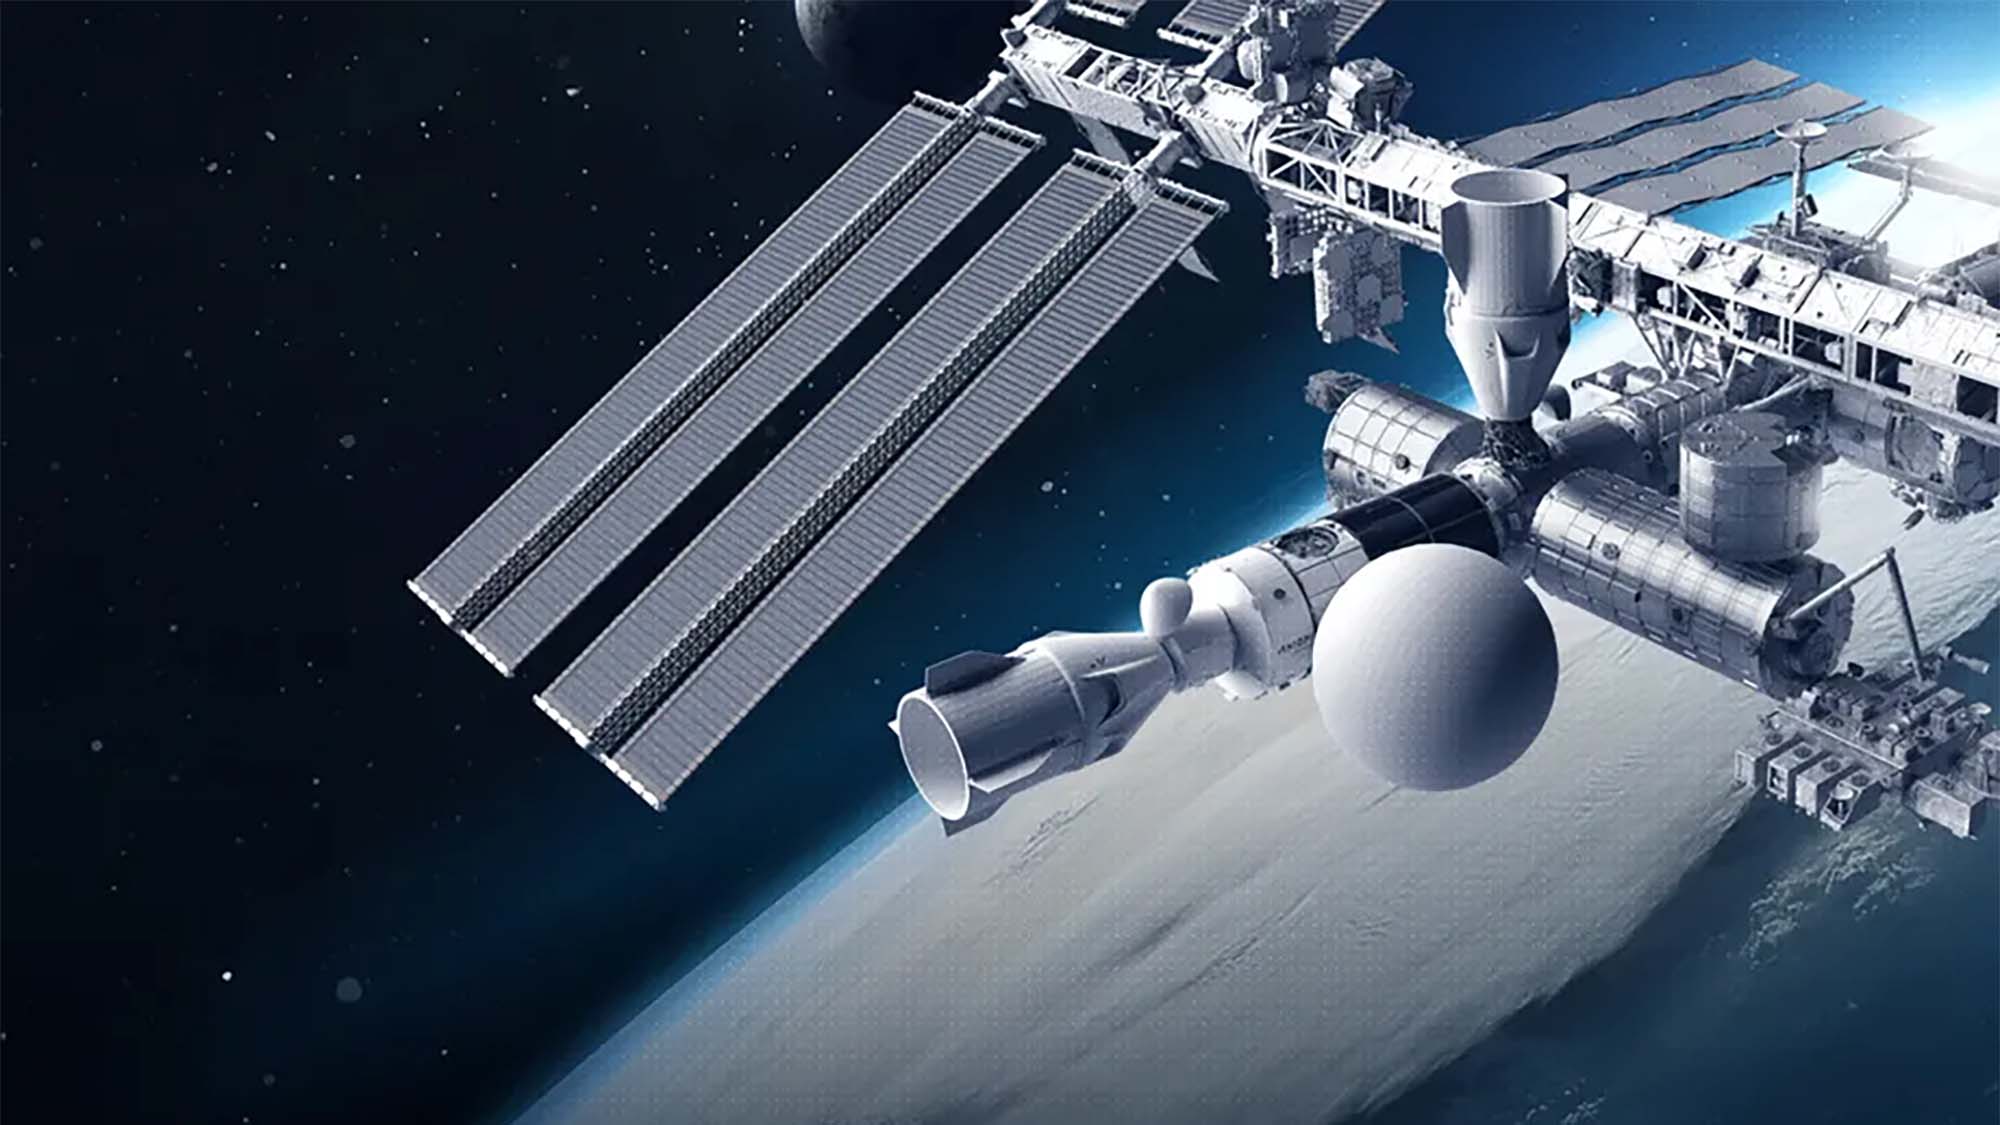 Lampiran yang diusulkan ke ISS yang akan menyertakan studio film.